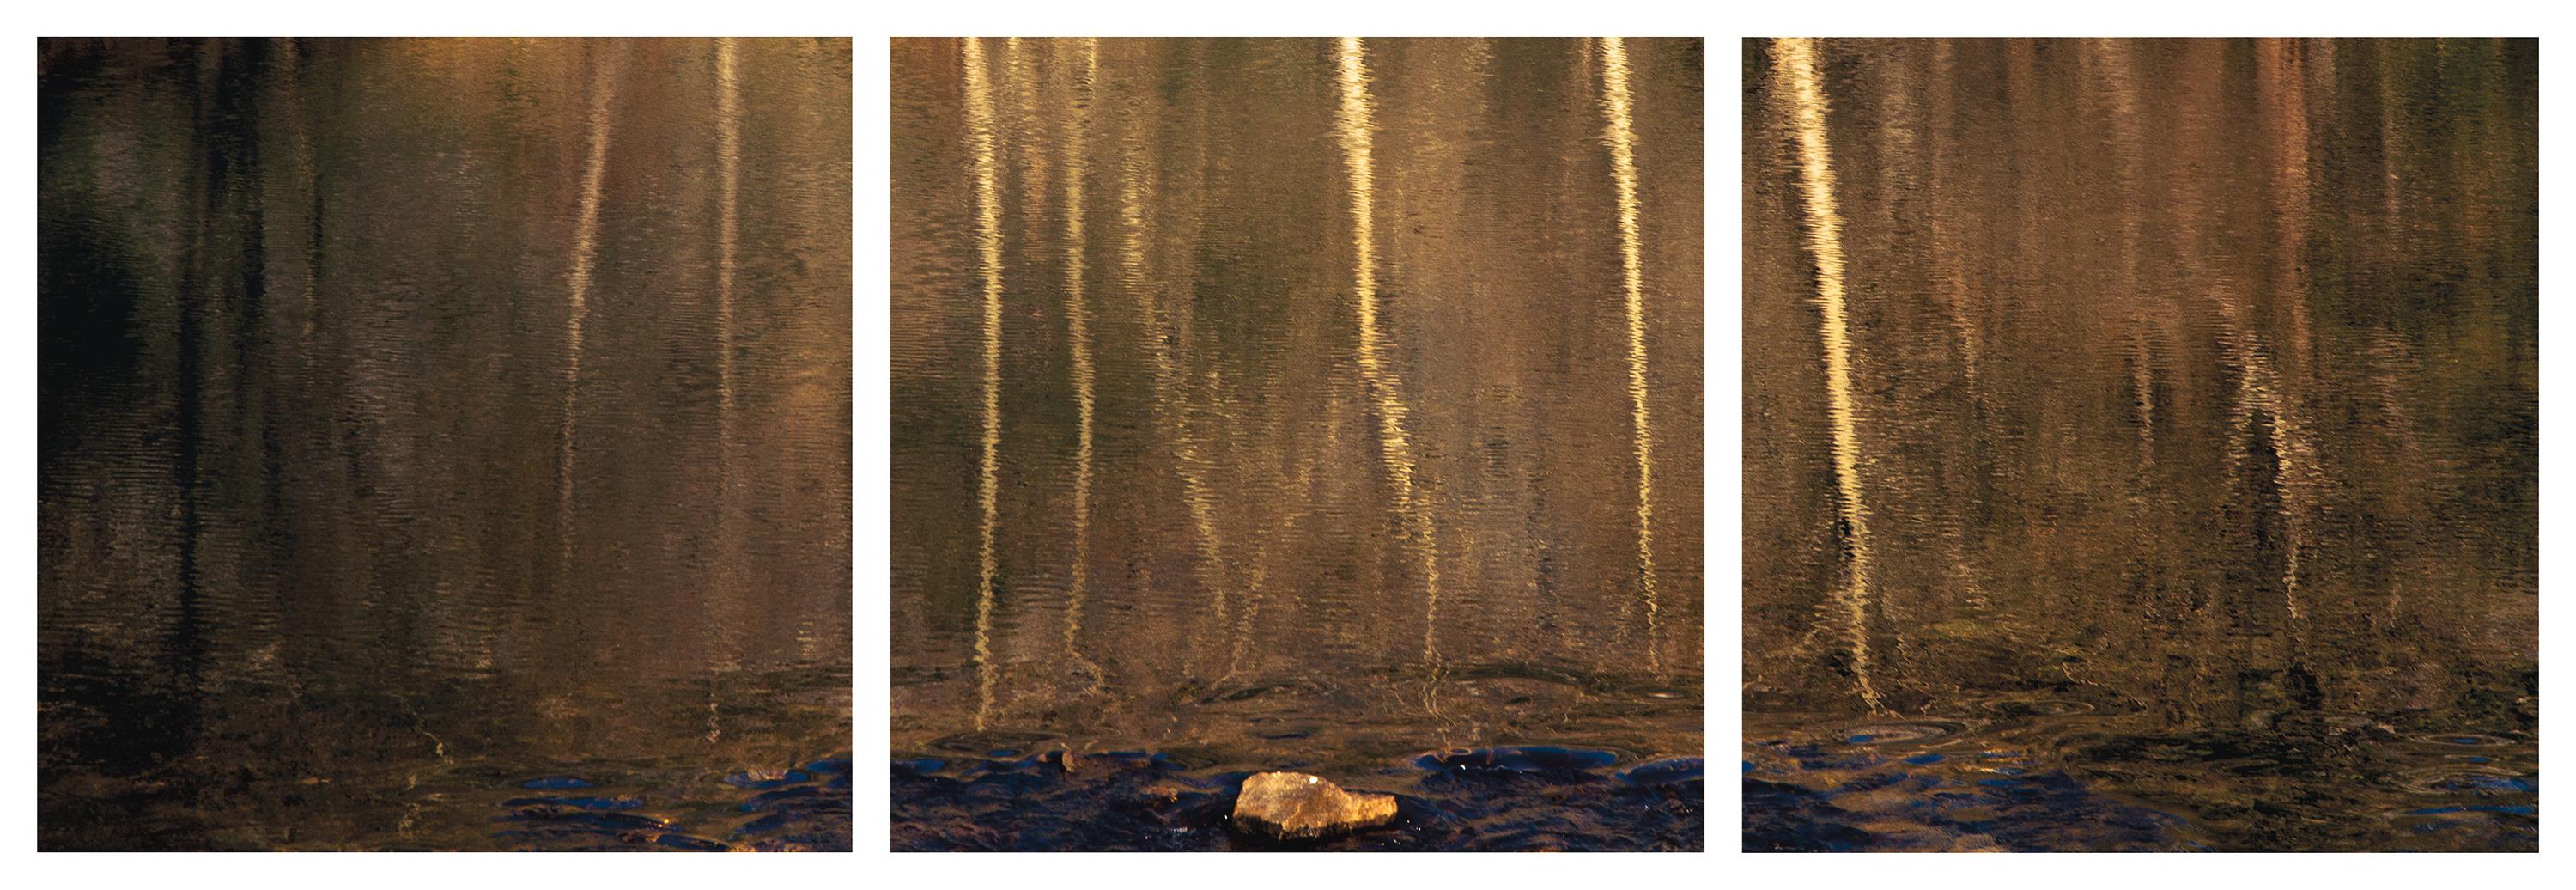 'Wa-Kal-La' Photographic triptych Yosemite Water Wood Tree Stone Nature Gold 